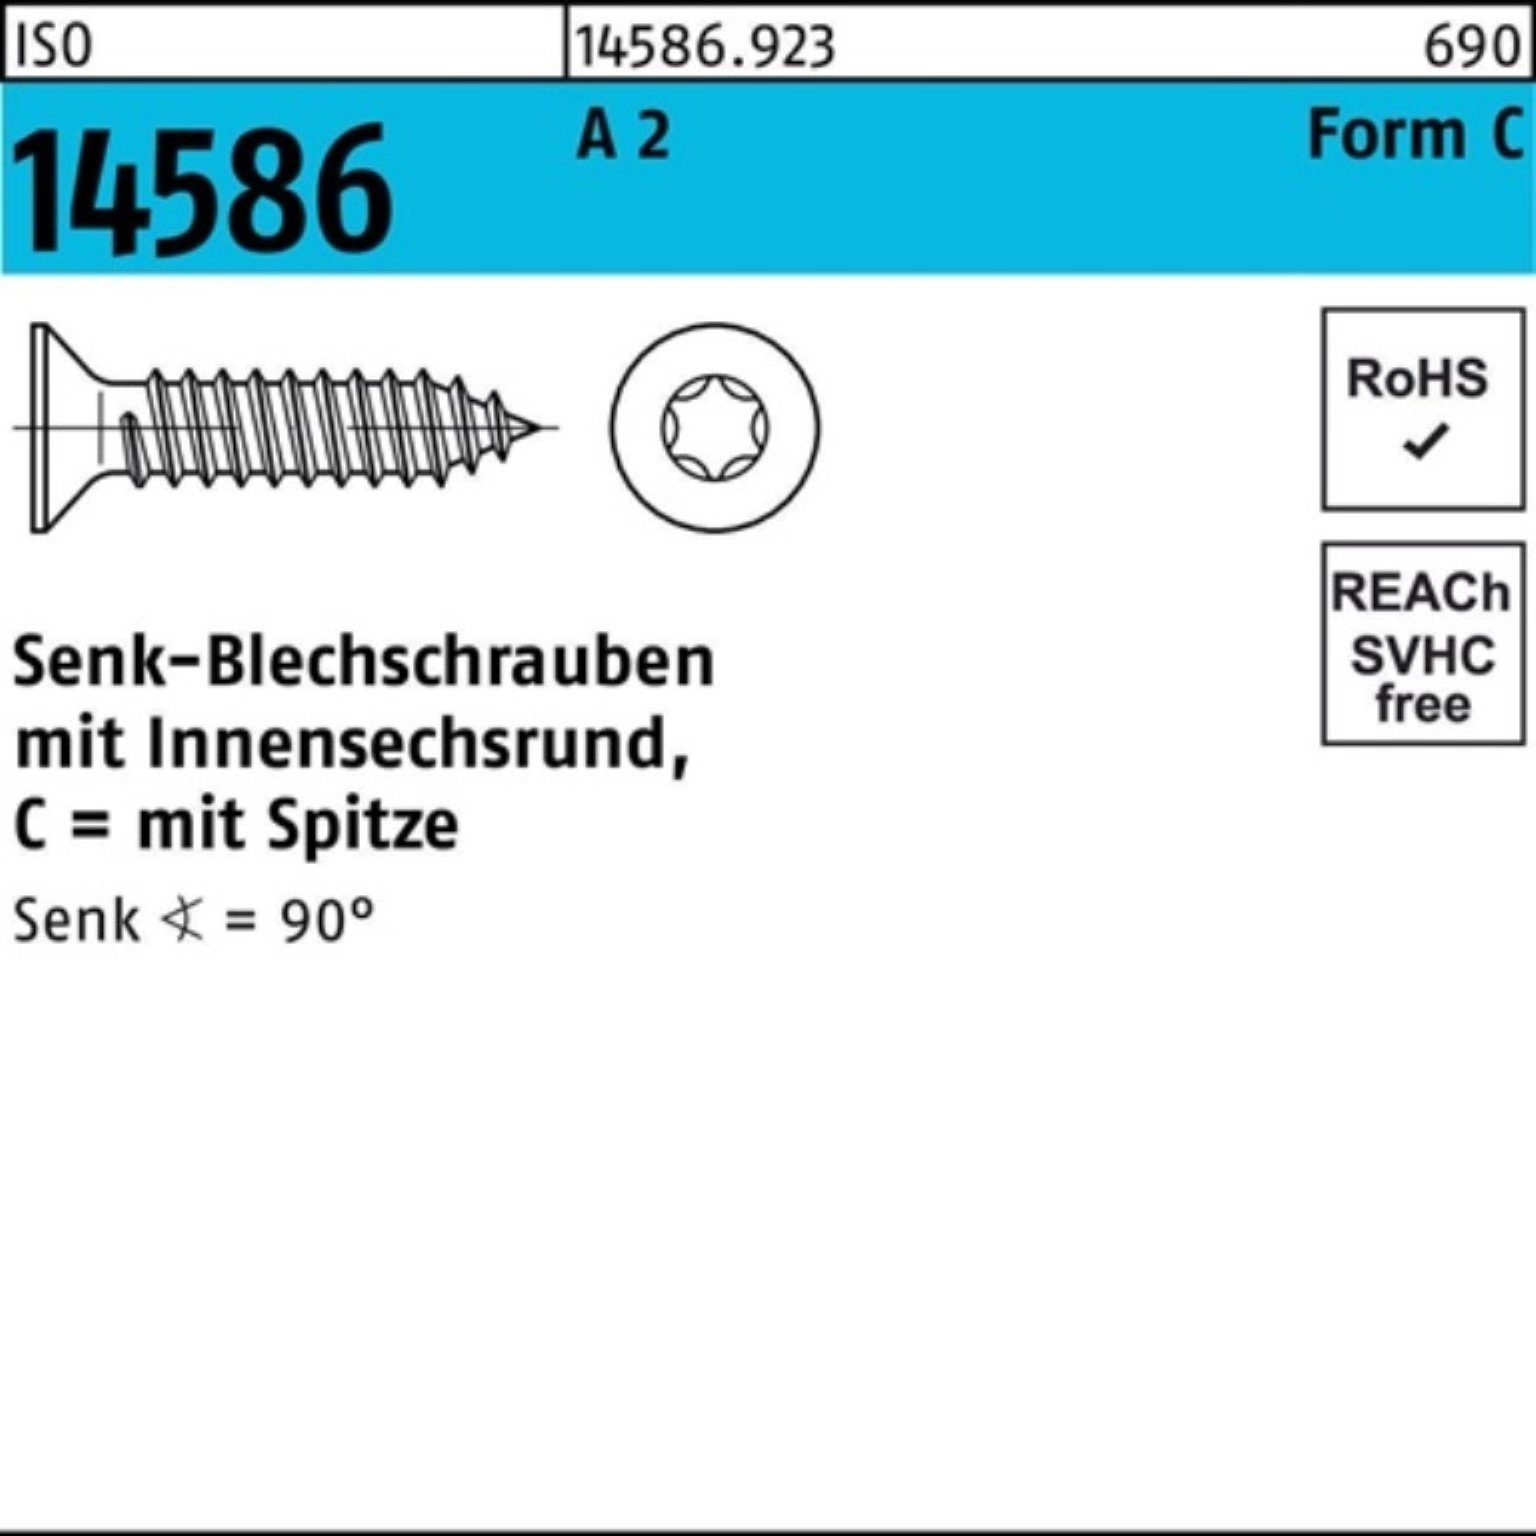 Reyher Schraube 250er Pack Senkblechschraube ISO 14586 ISR/Spitze 4,8x 50 -C T25 A 2 2